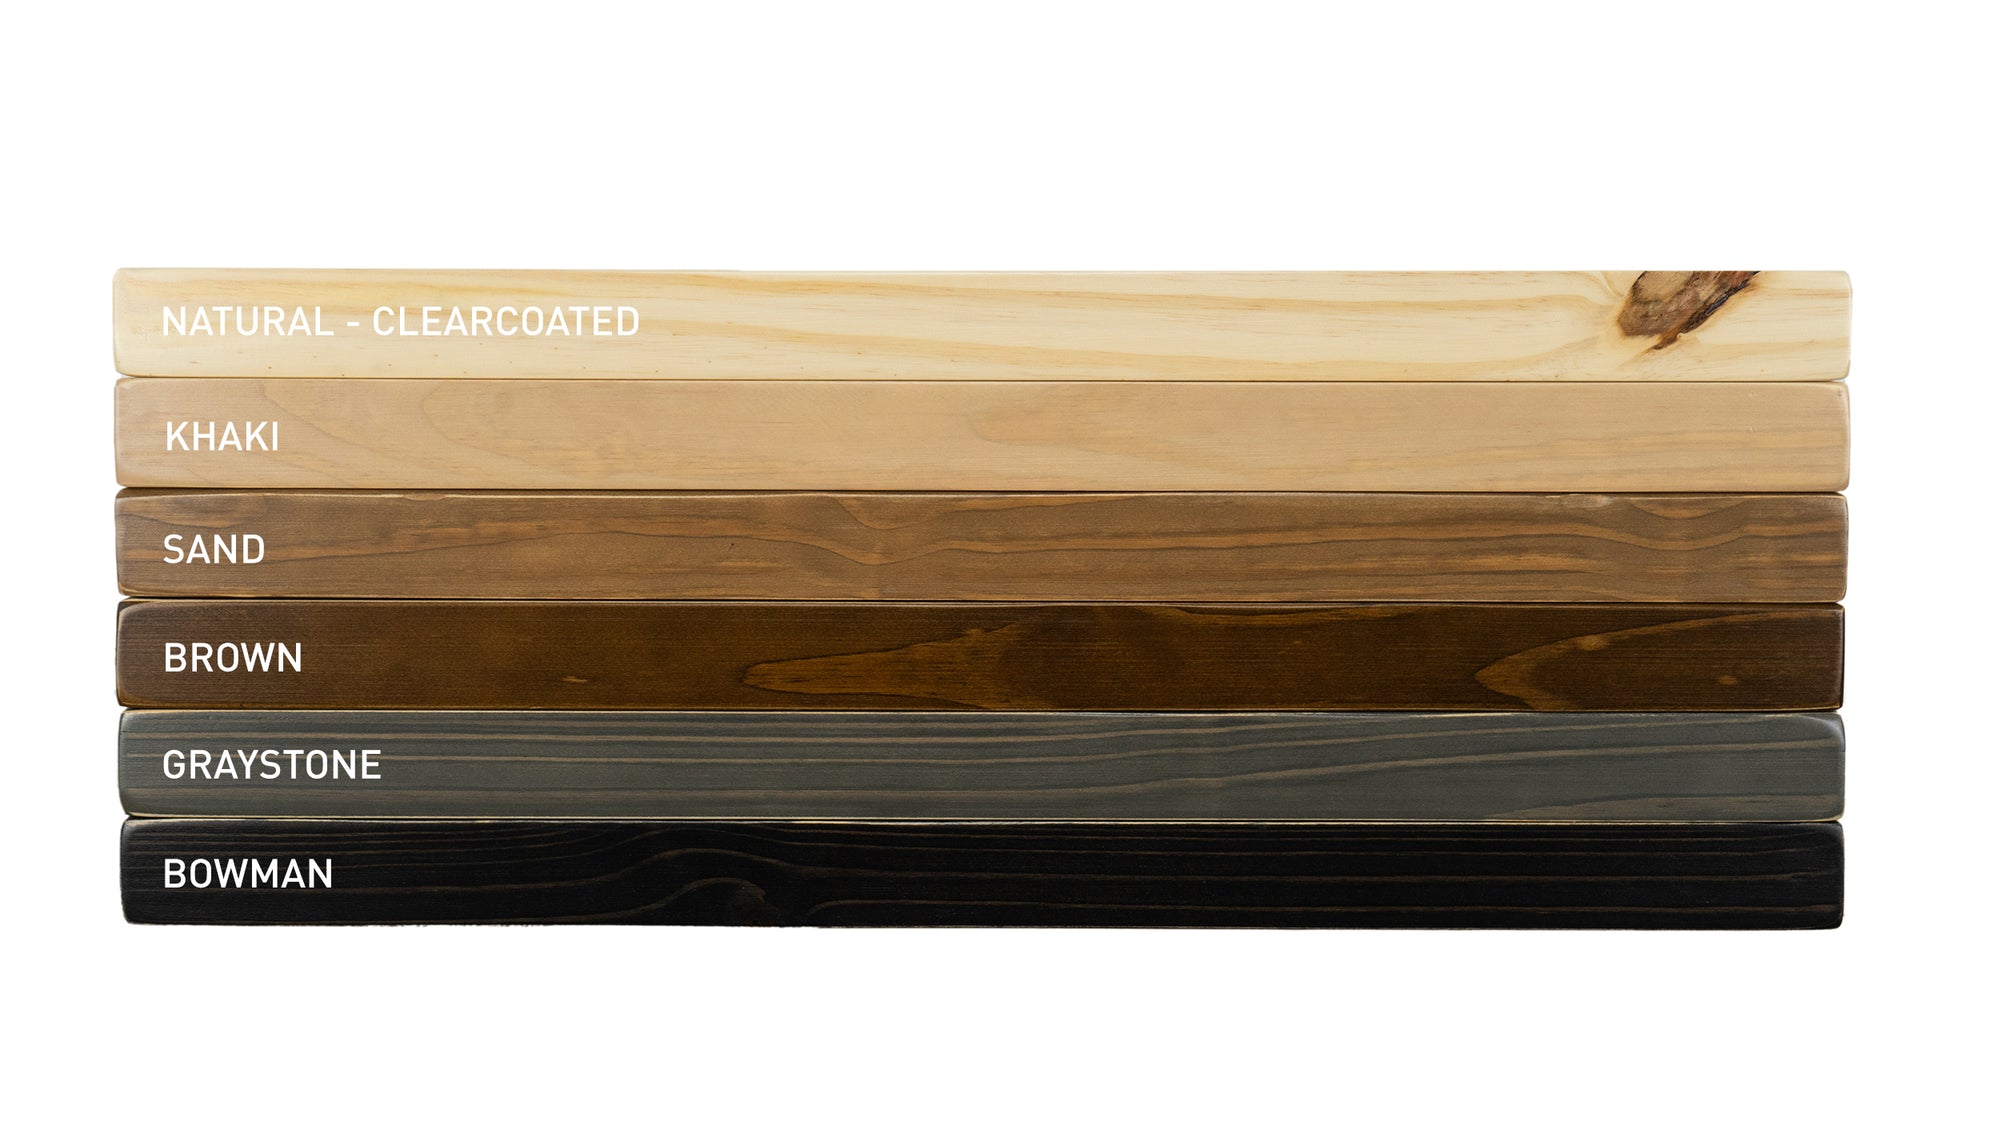 Sustain Floating Shelf Kit - Dakota Timber Co. Floating Shelves - Natural Wood Shelves - Made in USA Floating Shelves - Best Wood Shelves